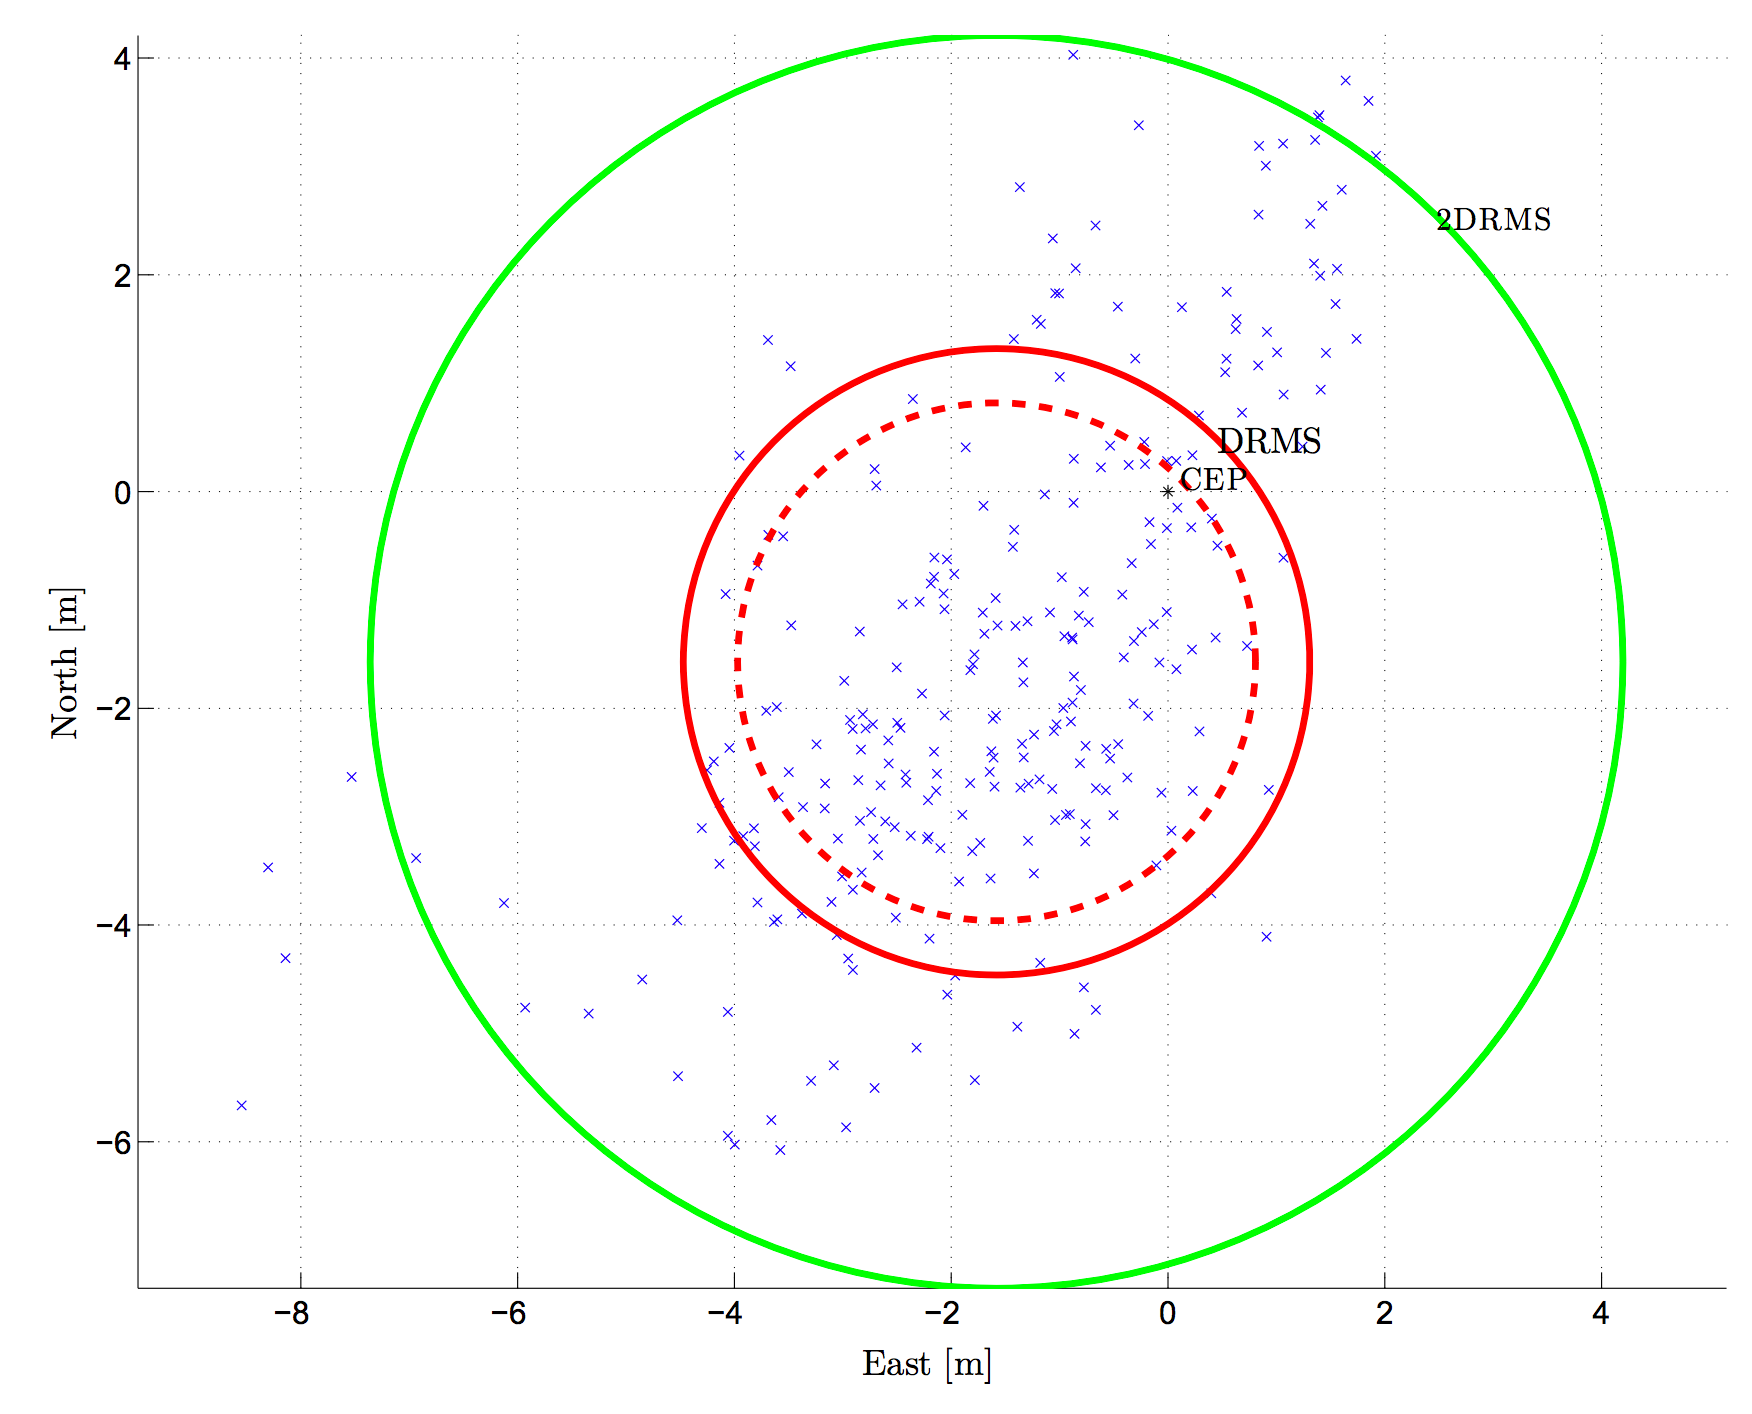 2D scatter plot